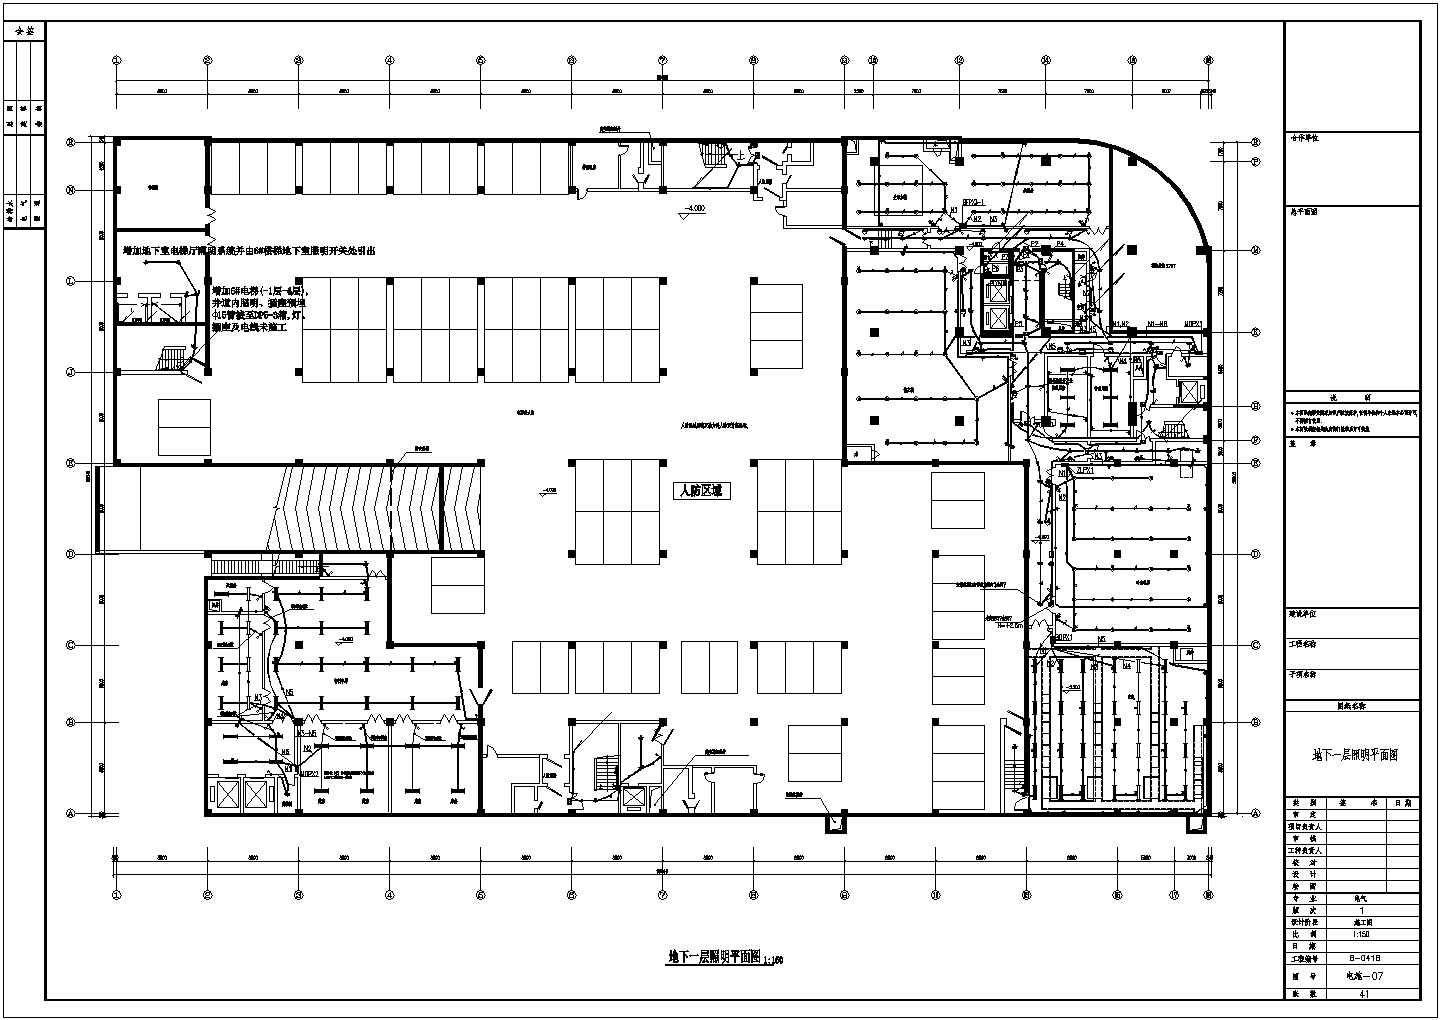 一栋12层的综合楼电气设计施工图